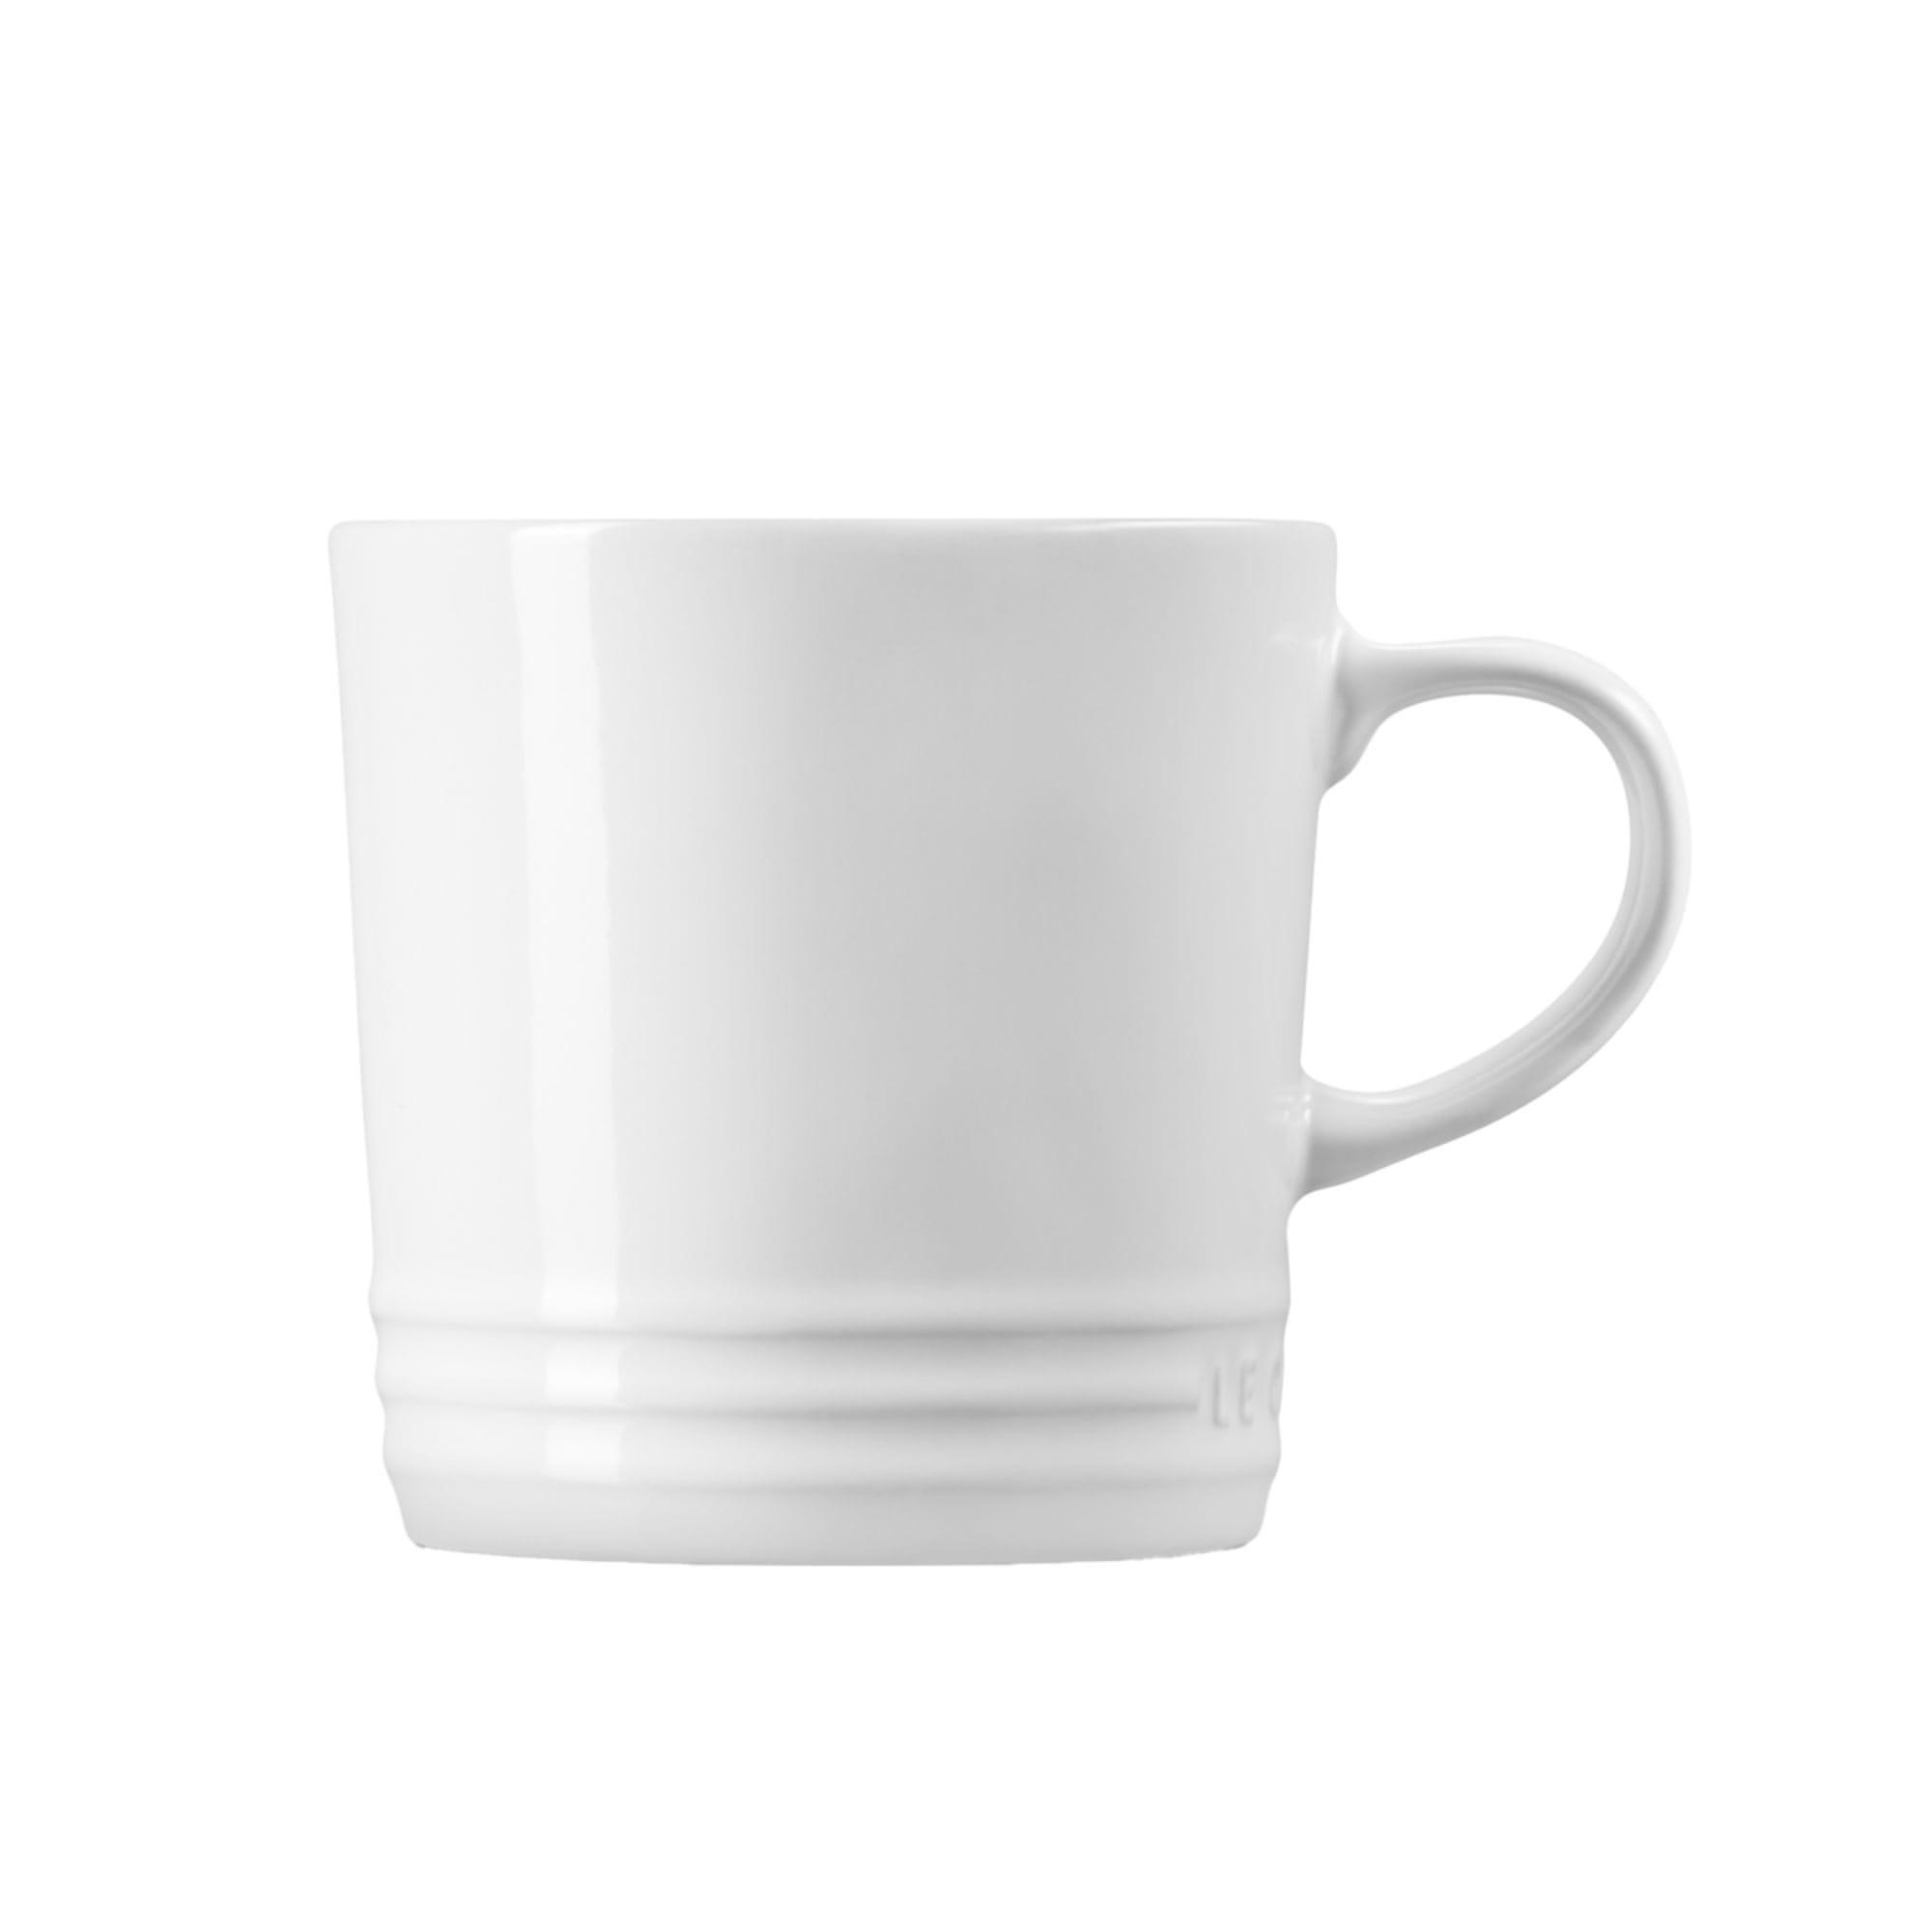 Le Creuset Stoneware Mug 350ml White Image 3